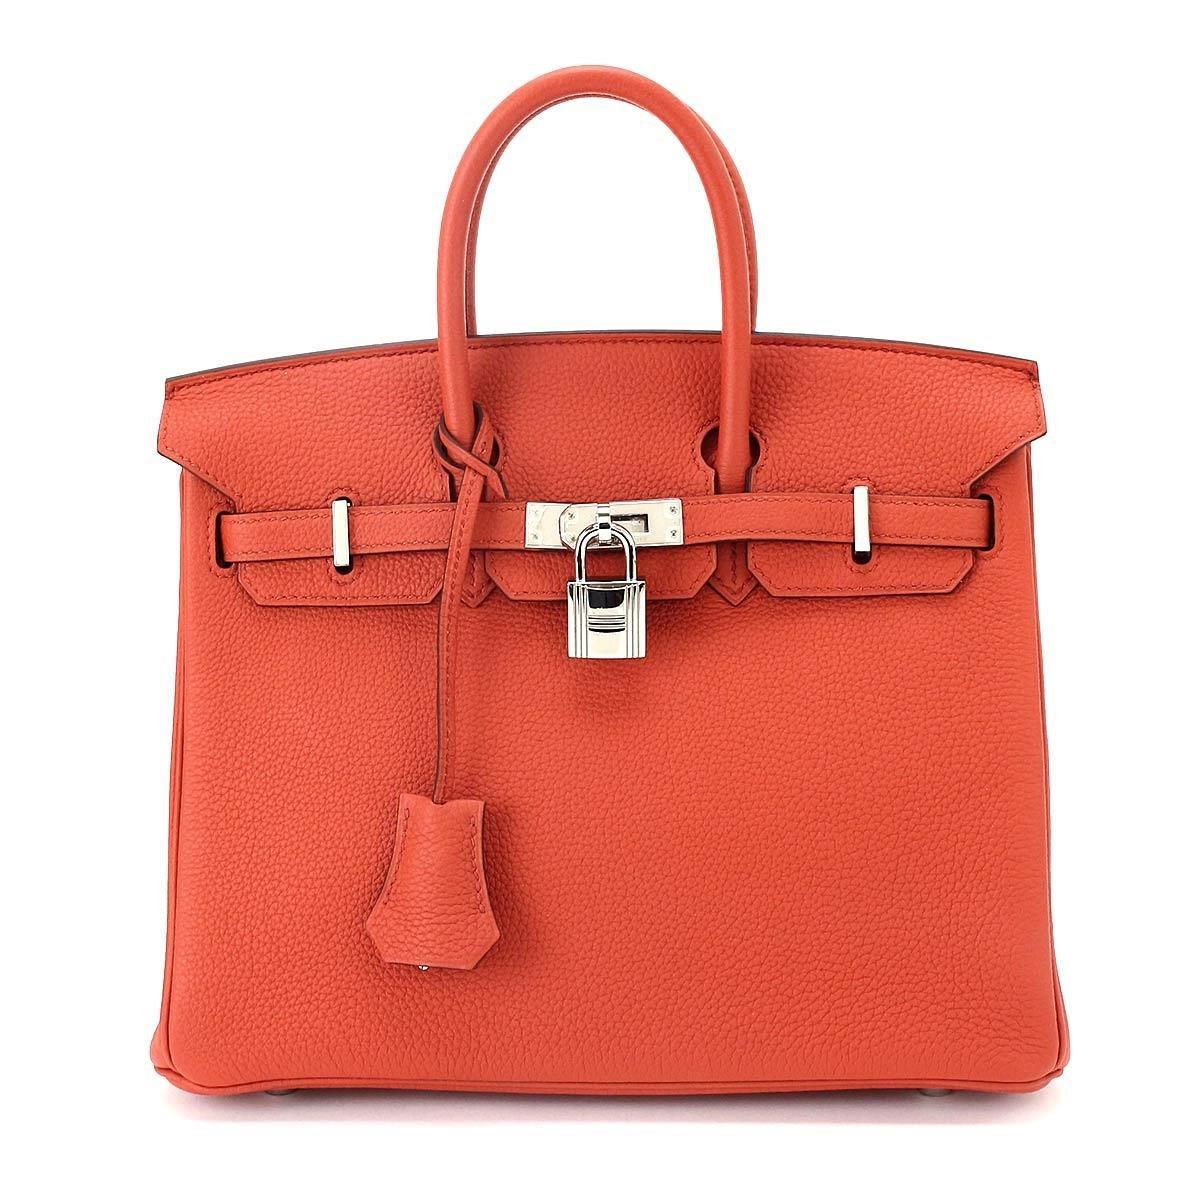 Lyst - Hermès Birkin 25 Hand Bag Togo Leather Cuivre Orange Purse 90042366.. in Orange